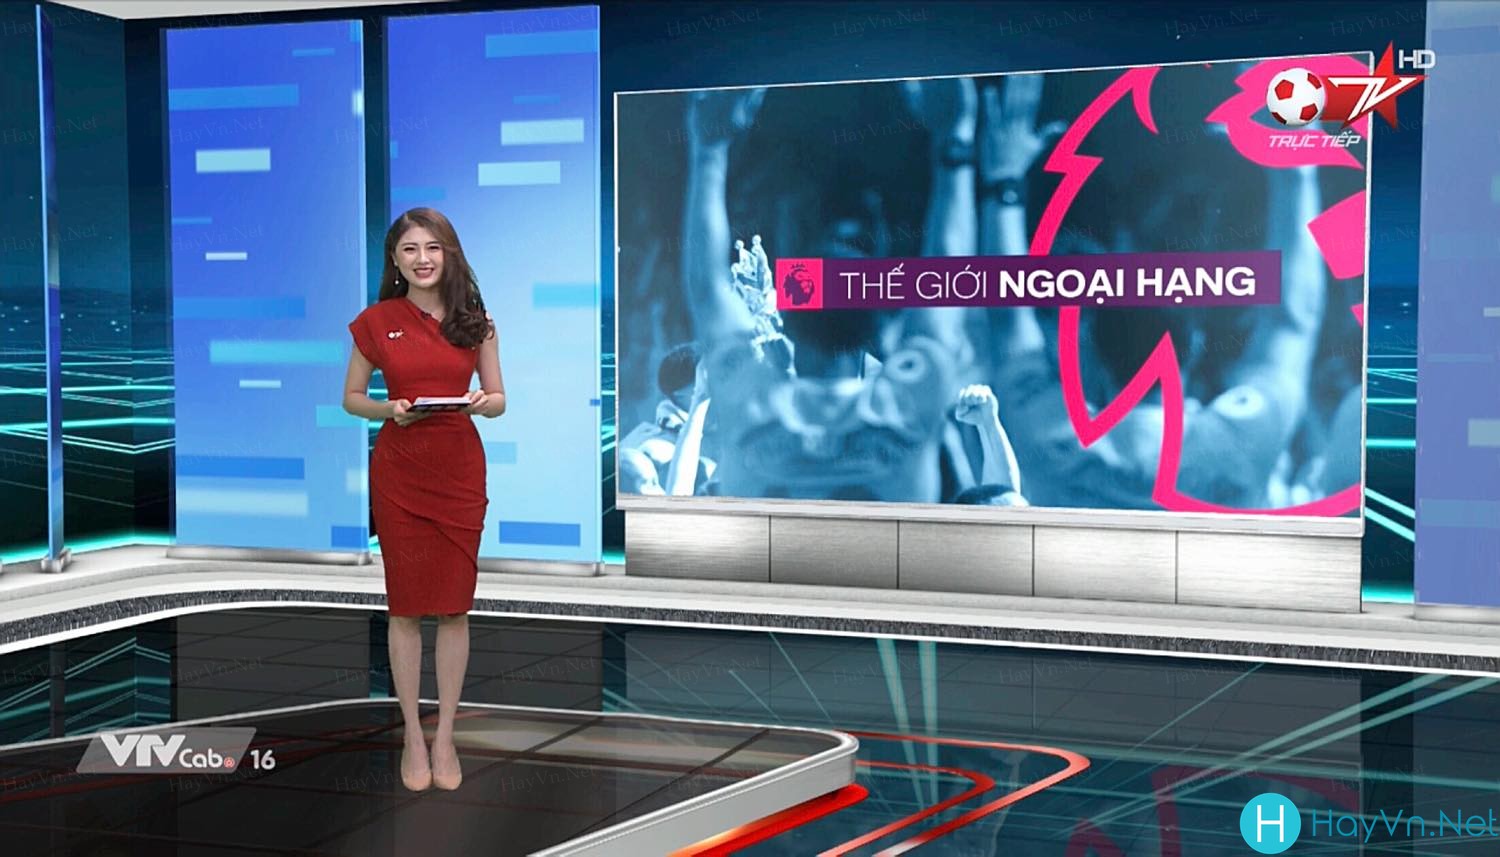 Huyền Trang: Gương mặt thương hiệu cho Truyền hình Cáp Việt Nam!